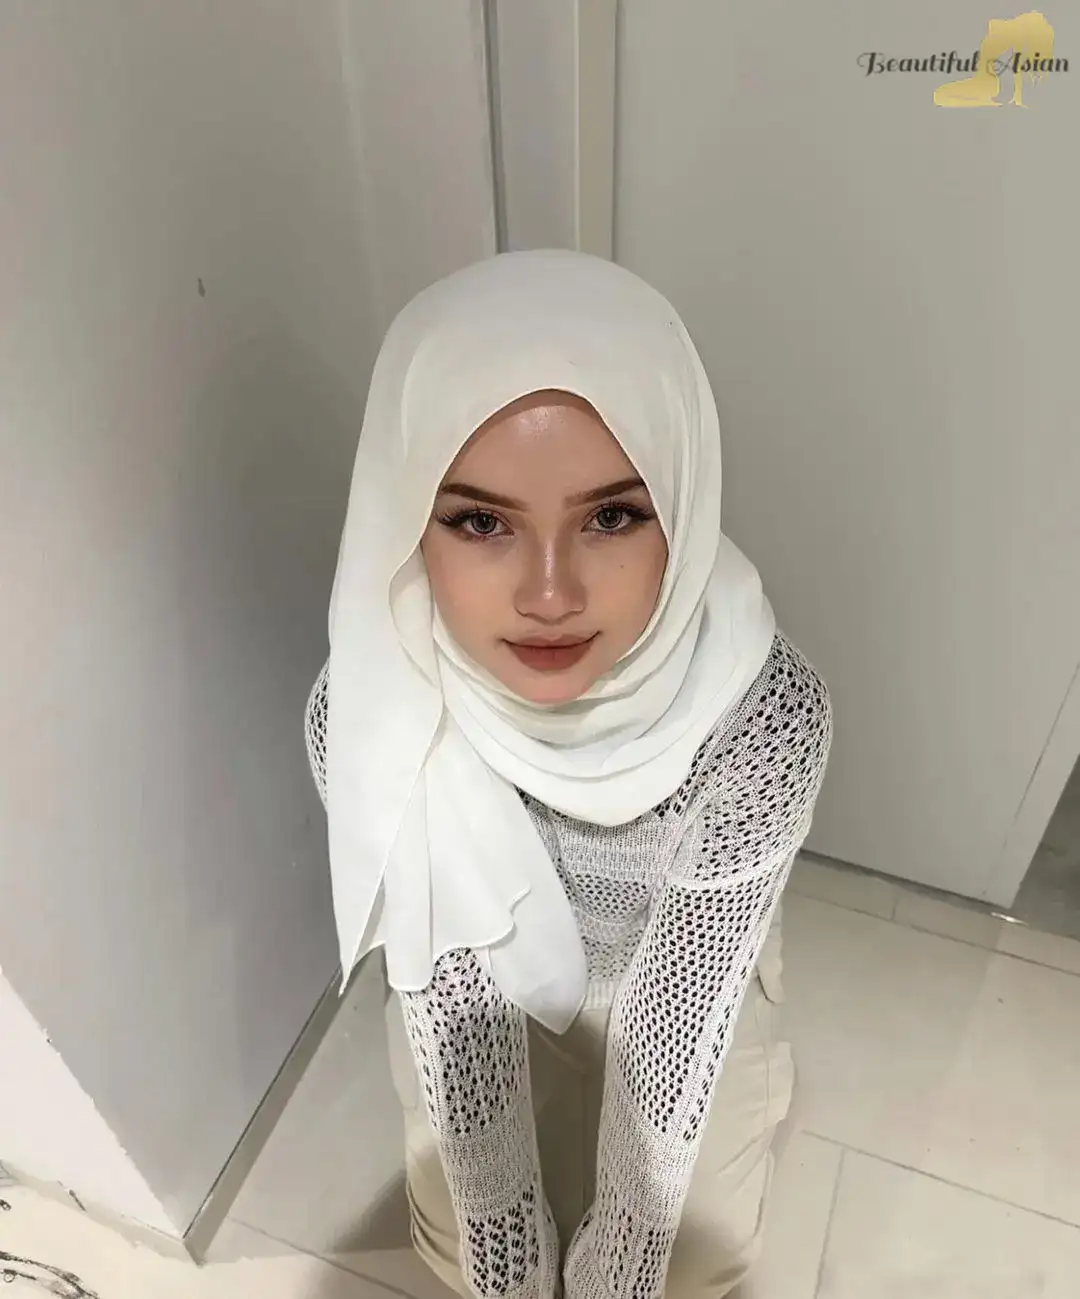 stunning Malaysian woman photo